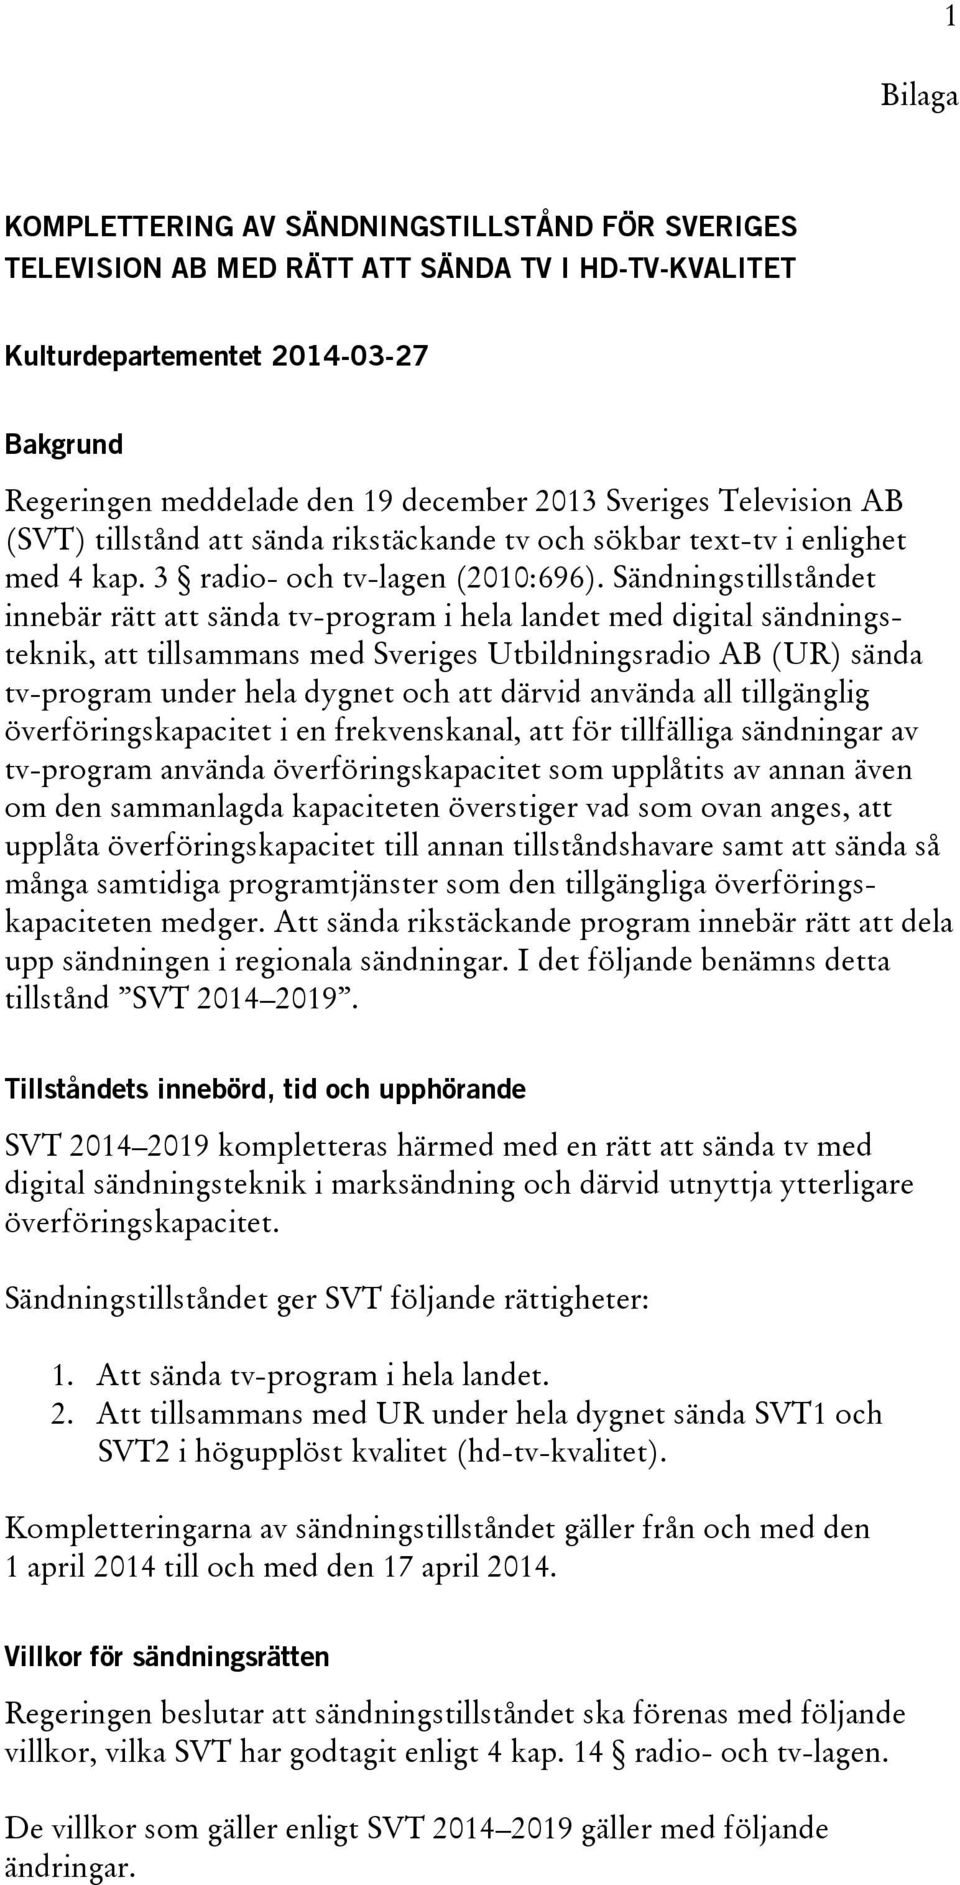 Sändningstillståndet innebär rätt att sända tv-program i hela landet med digital sändningsteknik, att tillsammans med Sveriges Utbildningsradio AB (UR) sända tv-program under hela dygnet och att